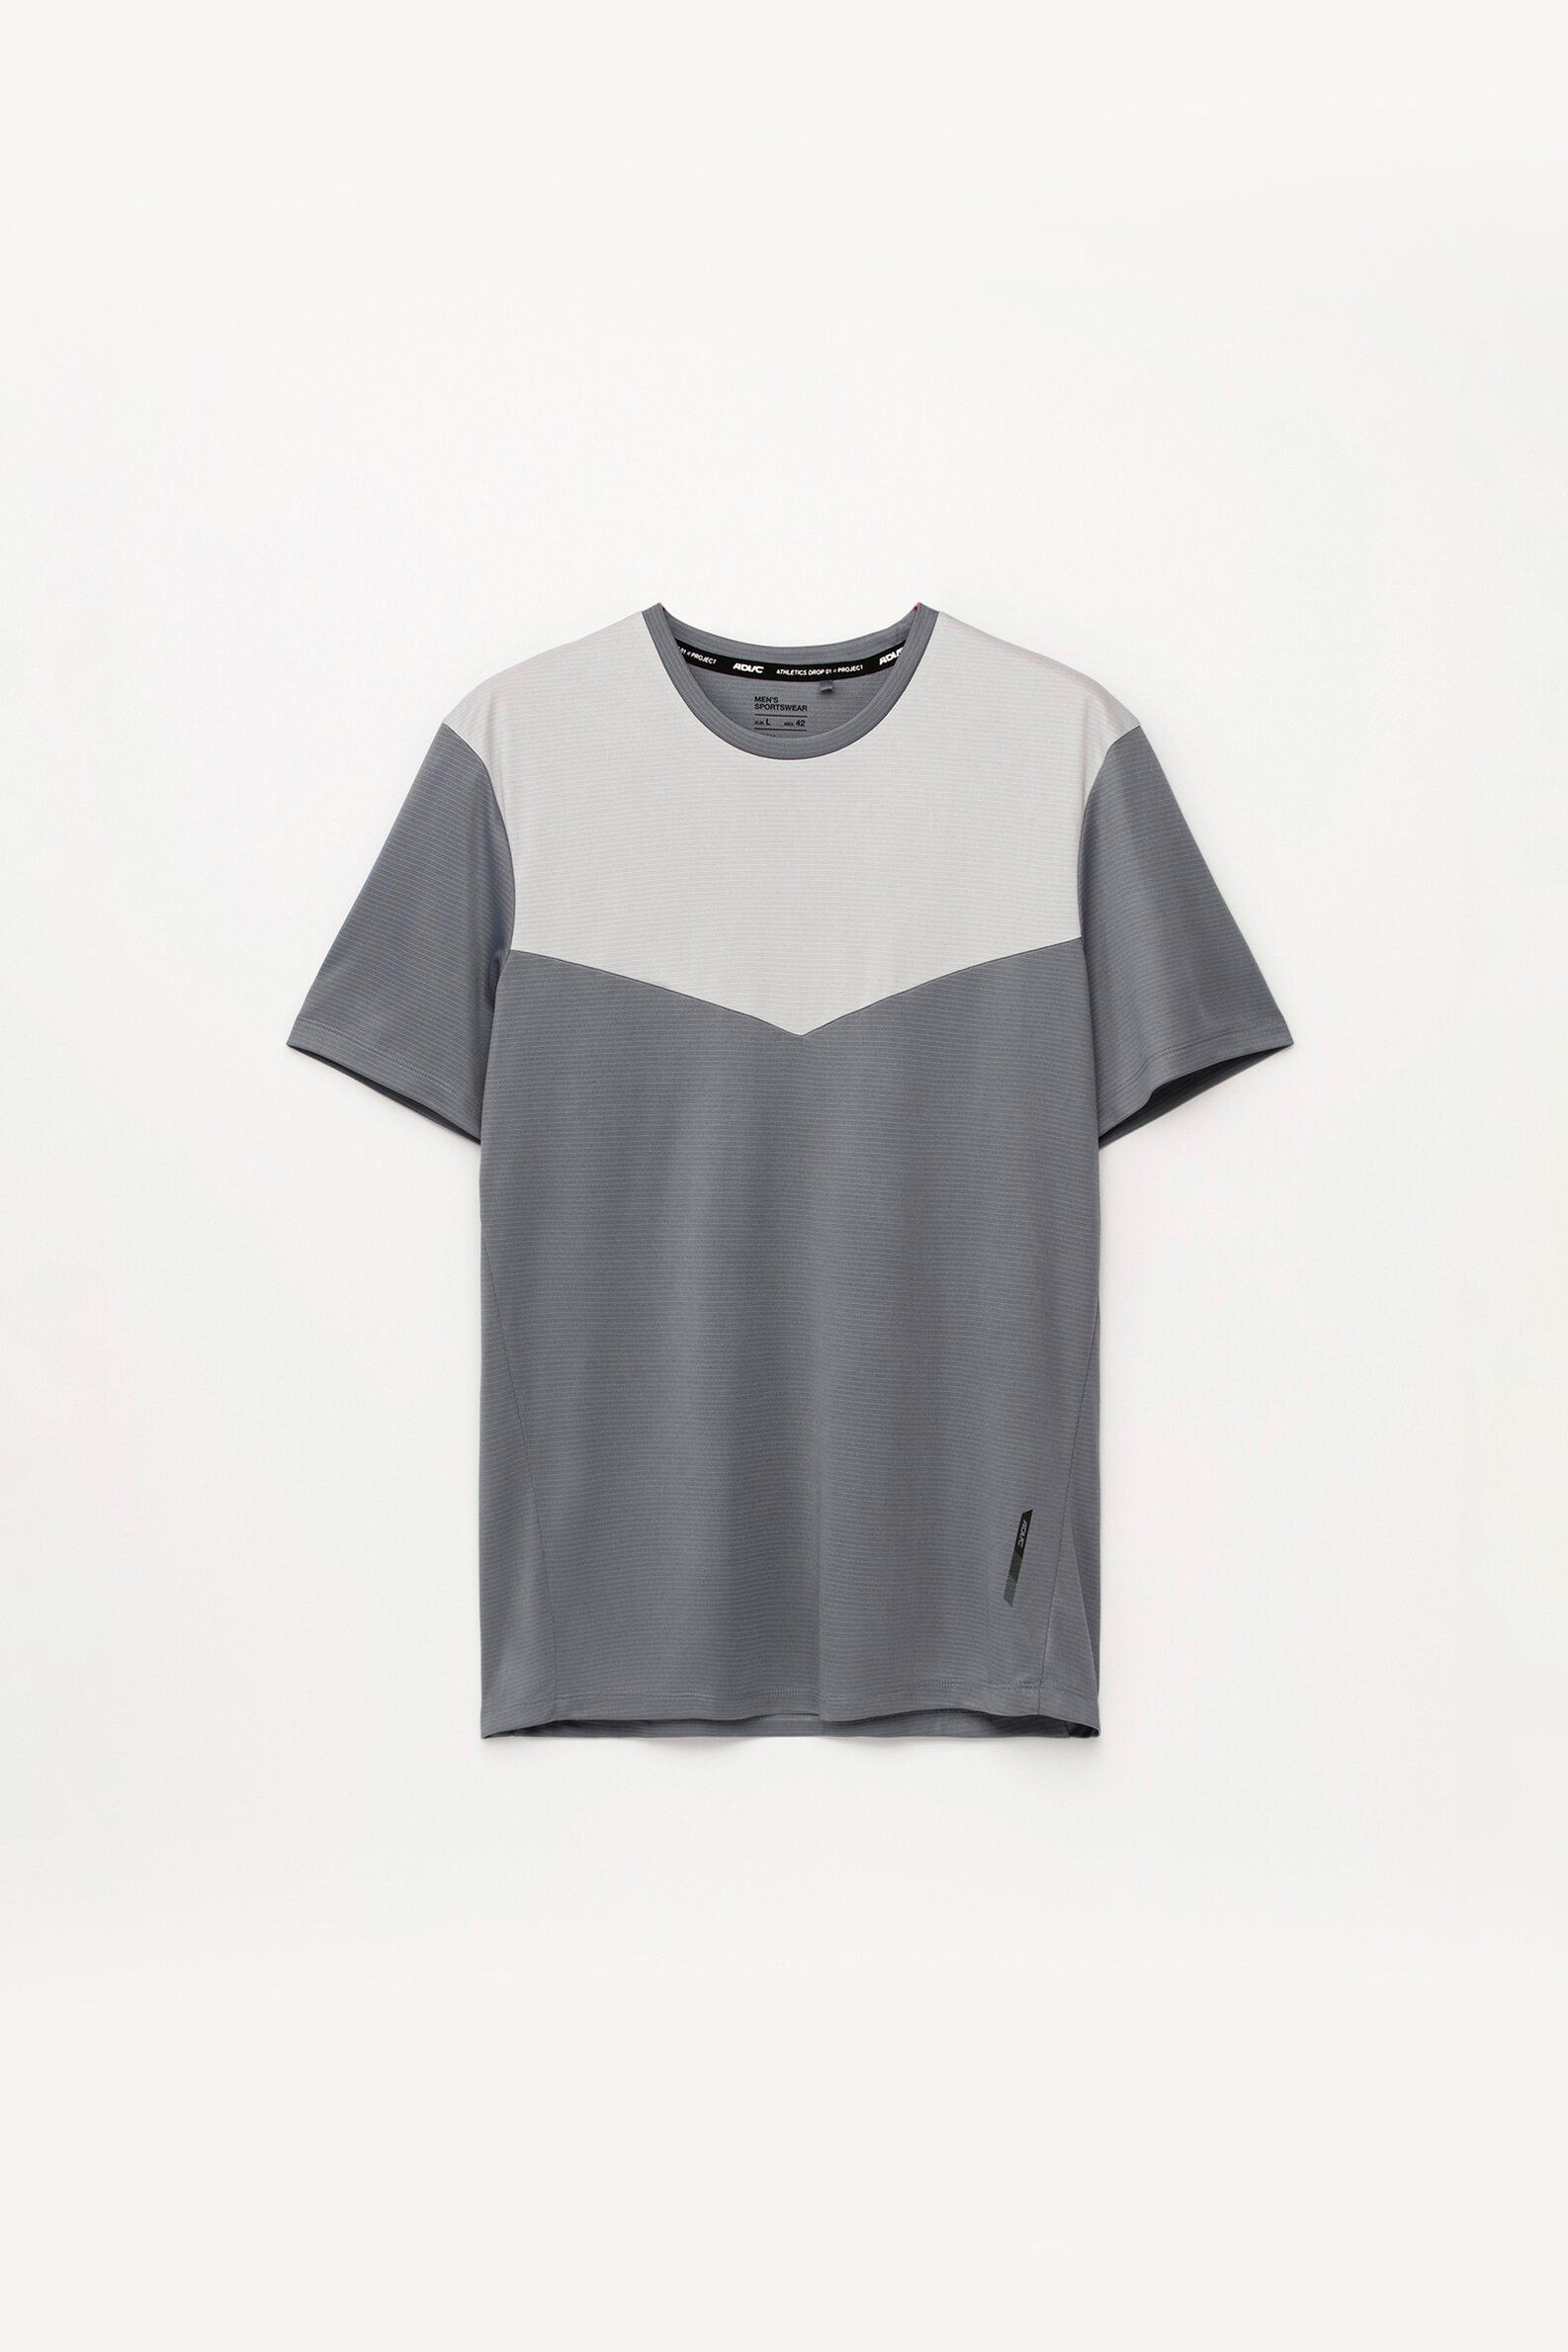 Sports T-shirt - Short Sleeve T-shirts - T-shirts - CLOTHING - Man 